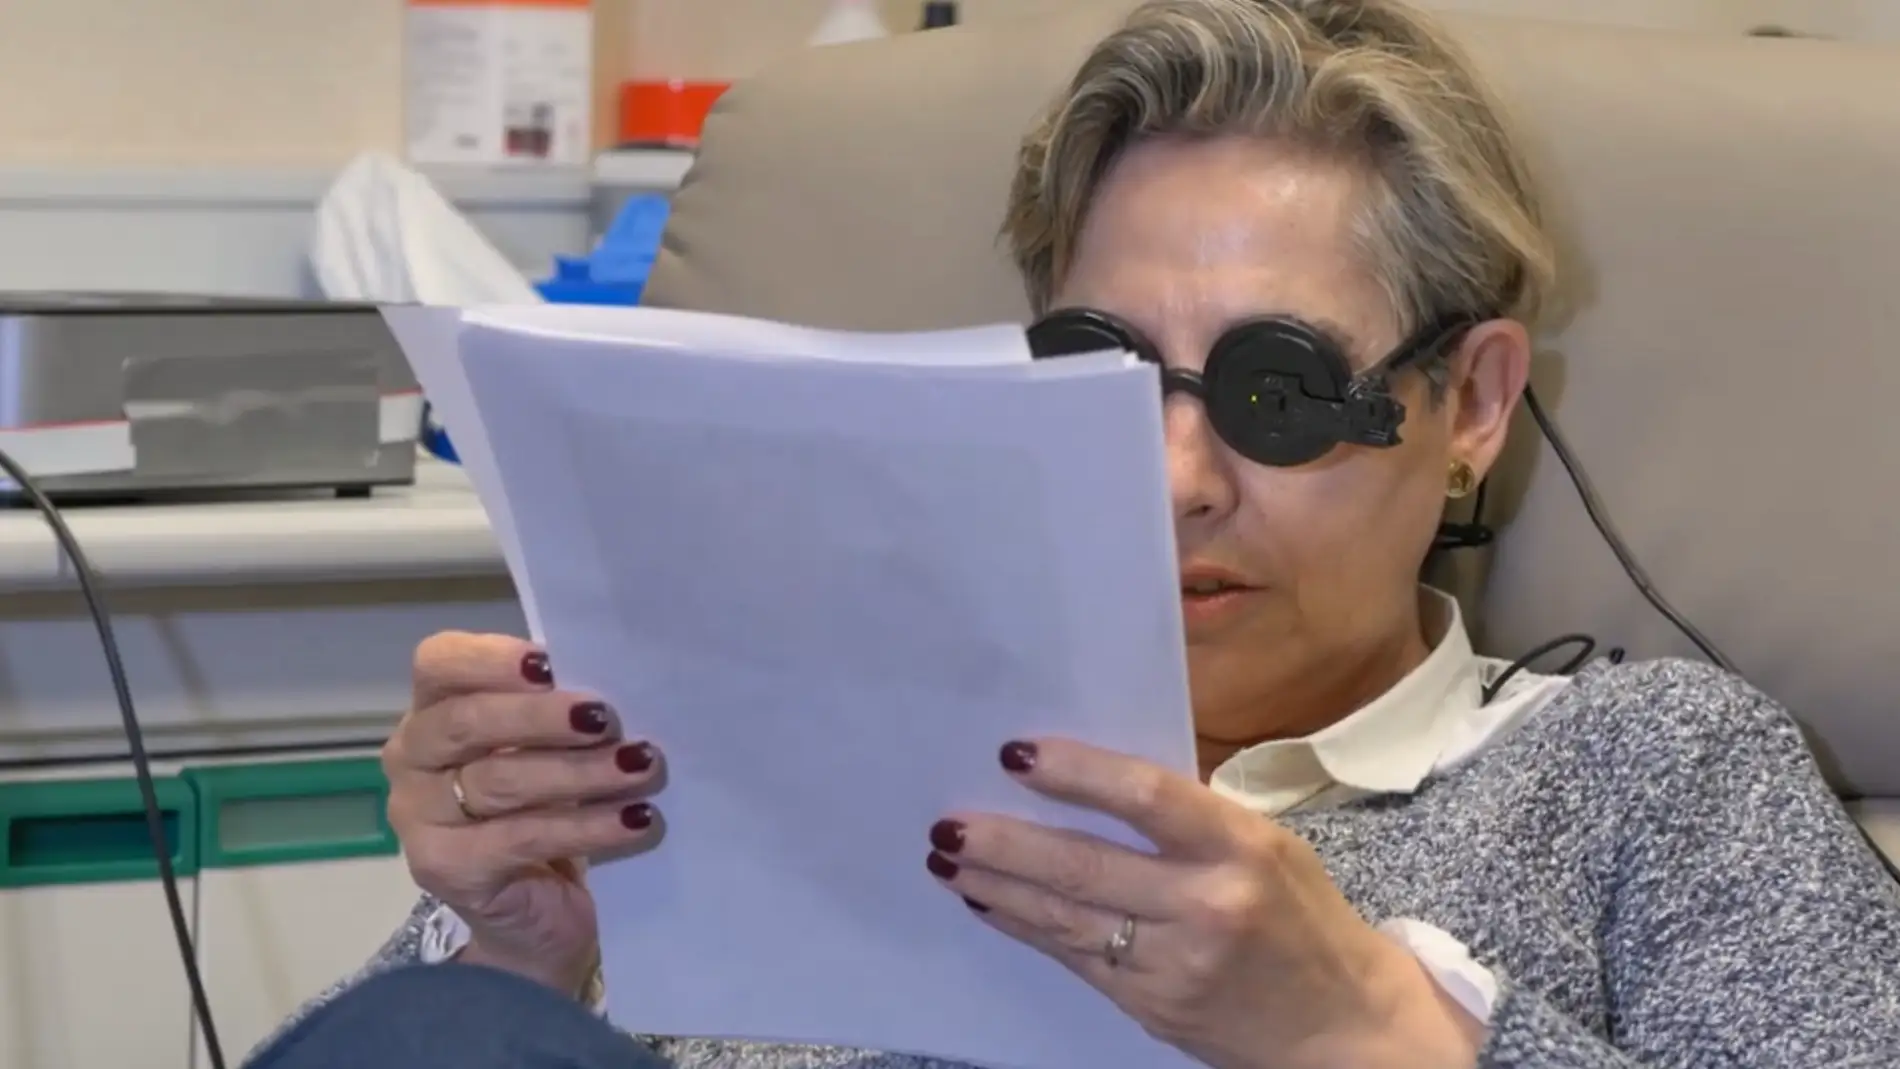 Investigadores espanoles logran que una mujer ciega vea formas simples y letras con un implante cerebral